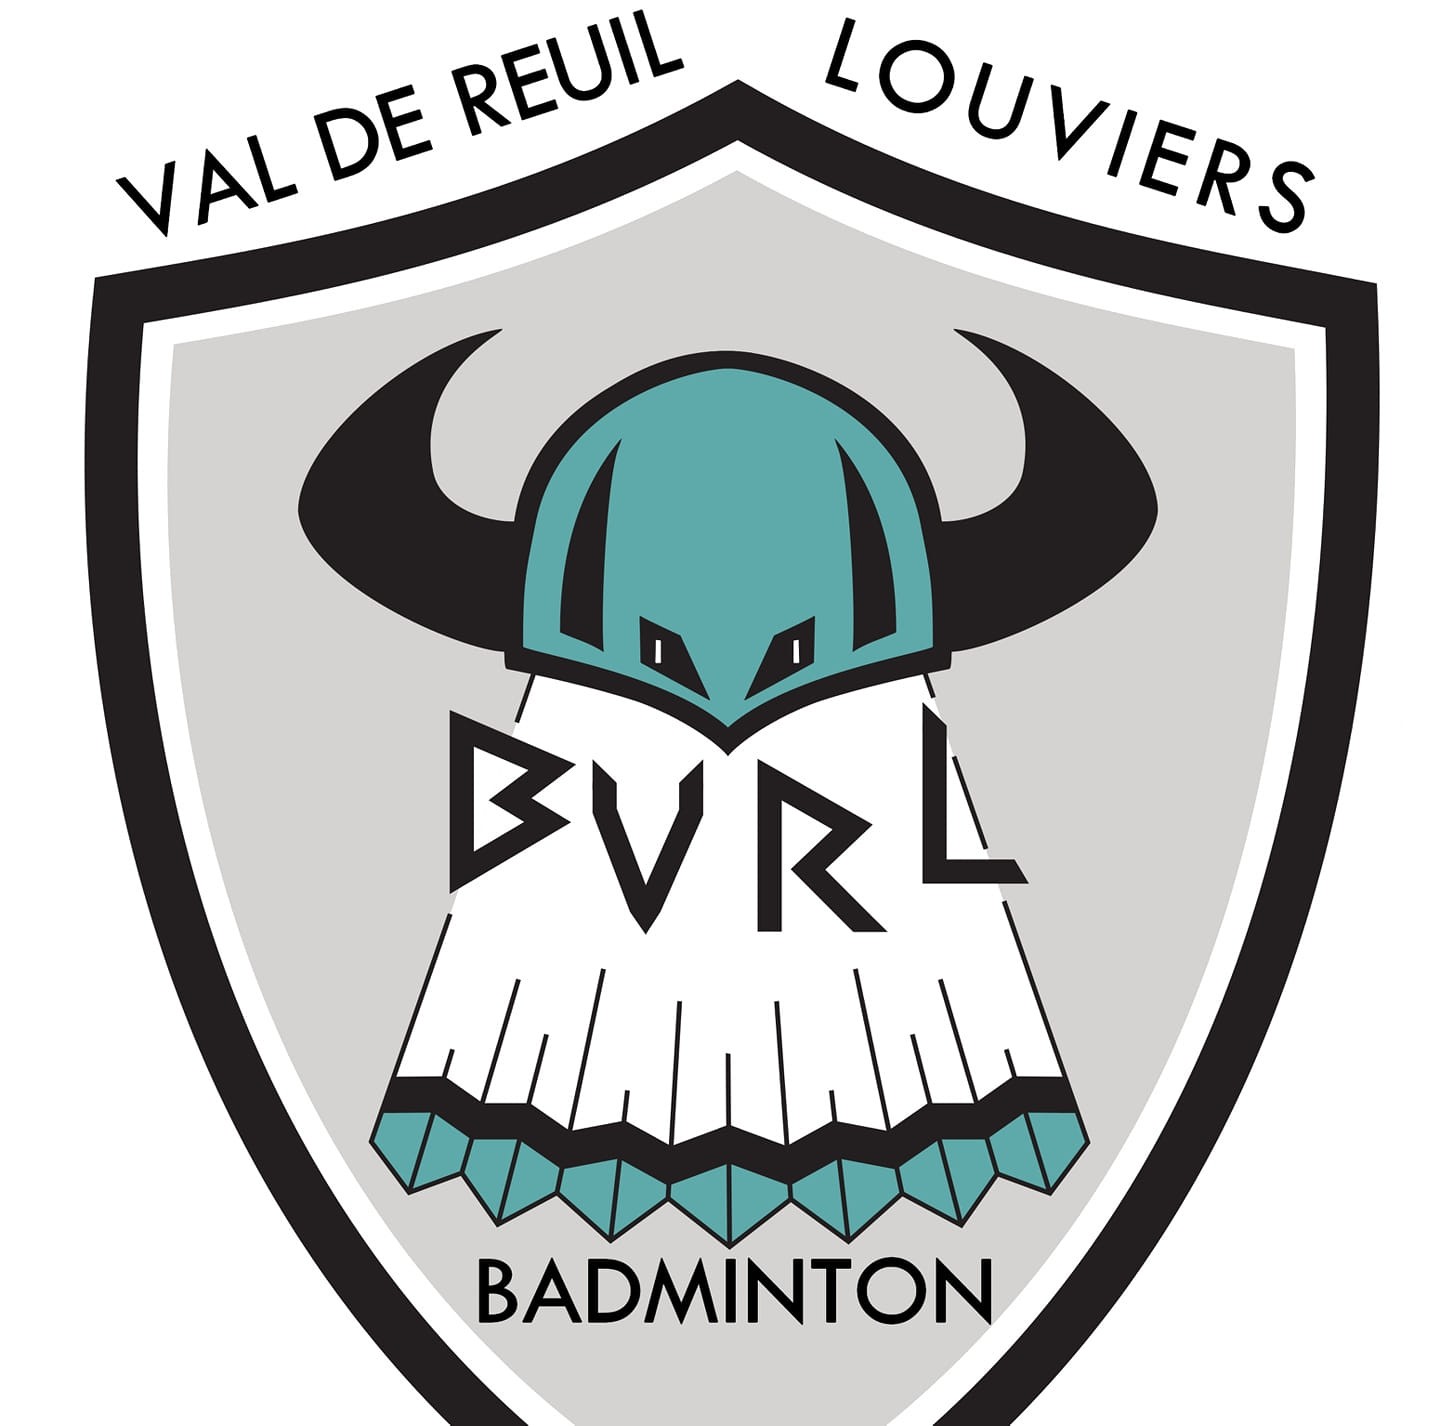 Badminton Val-de-Reuil/Louviers (BVRL)